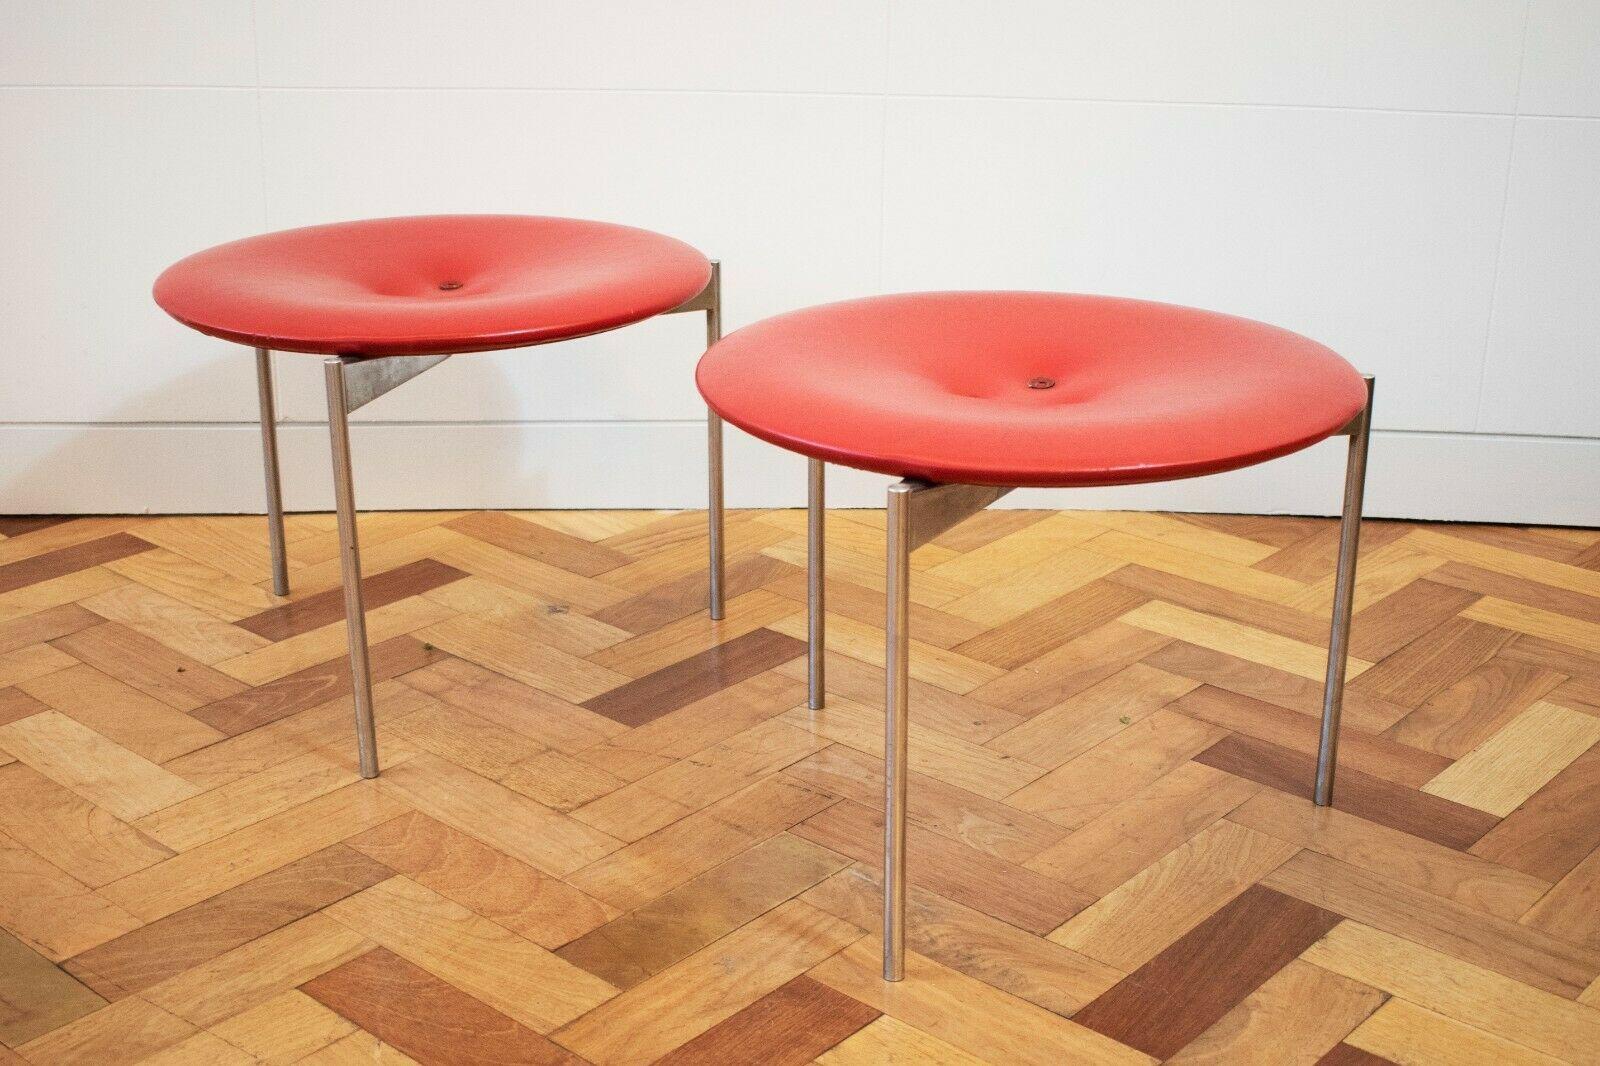 Der runde Sitz steht auf einem verchromten Dreibein-Metallsockel und ist mit dem originalen roten Leder mit Knopfverzierung bezogen, 

Über die Designer:
Die schwedischen Designer und Brüder Uno & Östen Kristiansson, die für ihre Beleuchtungs- und